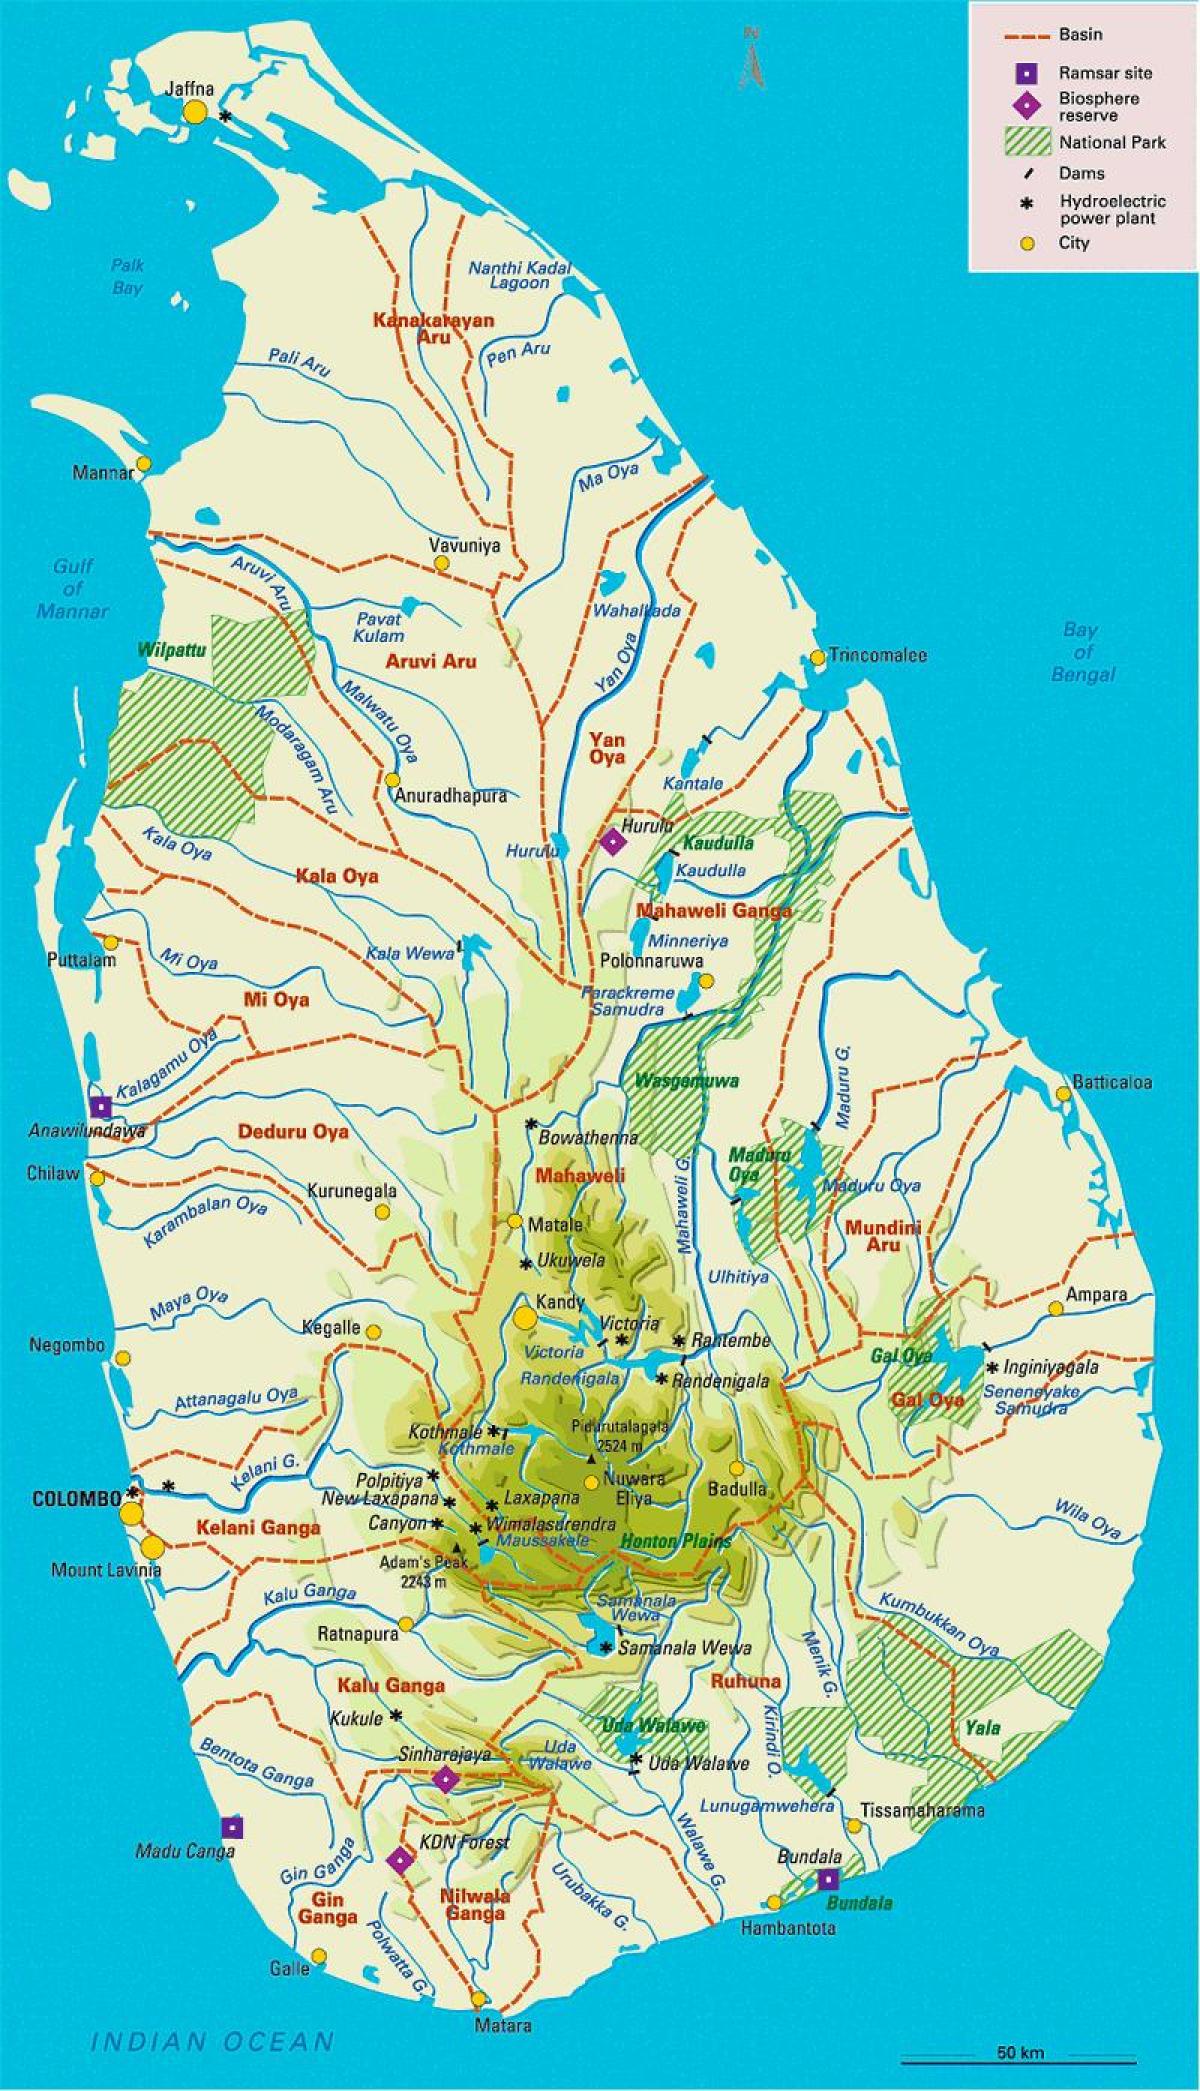 ศรี Lankan ริเวอร์แผนที่ในภาษาทมิฬ name